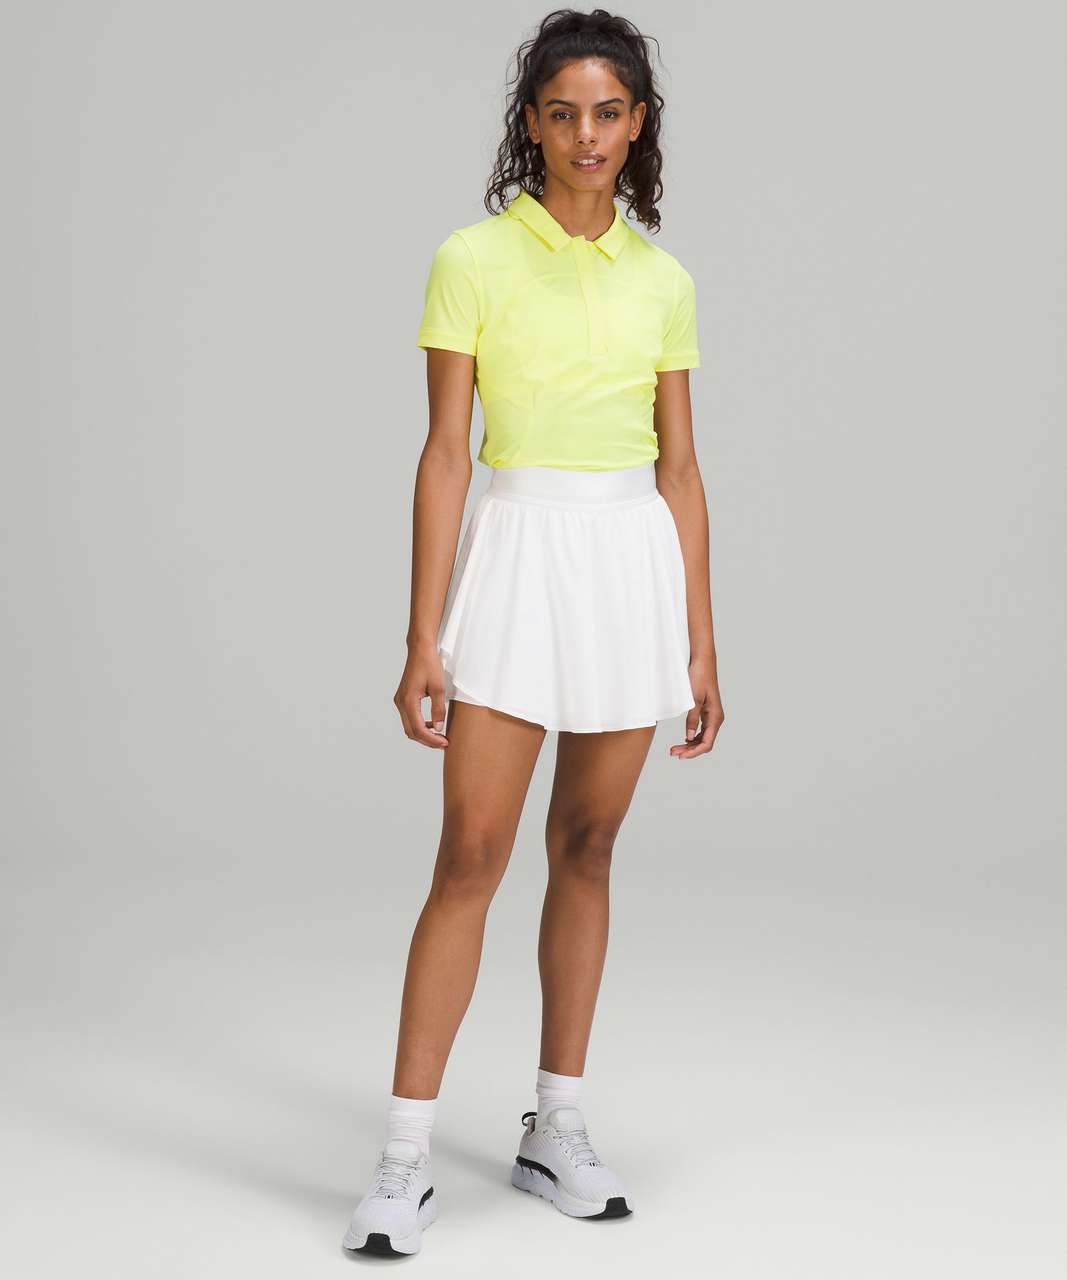 Lululemon Quick-Drying Short Sleeve Polo Shirt - Electric Lemon